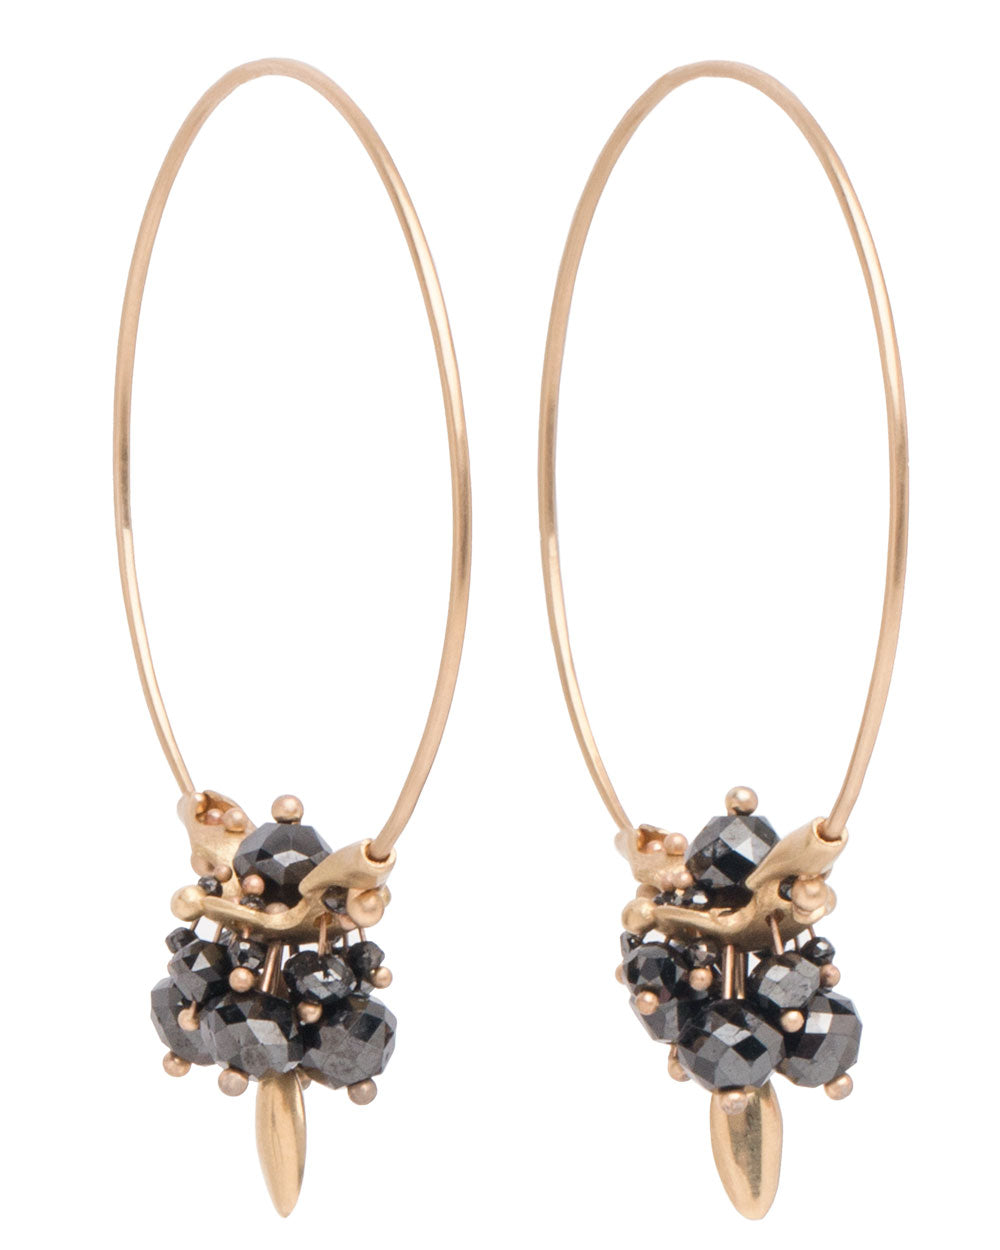 Black Diamond Cluster Hoop Earrings